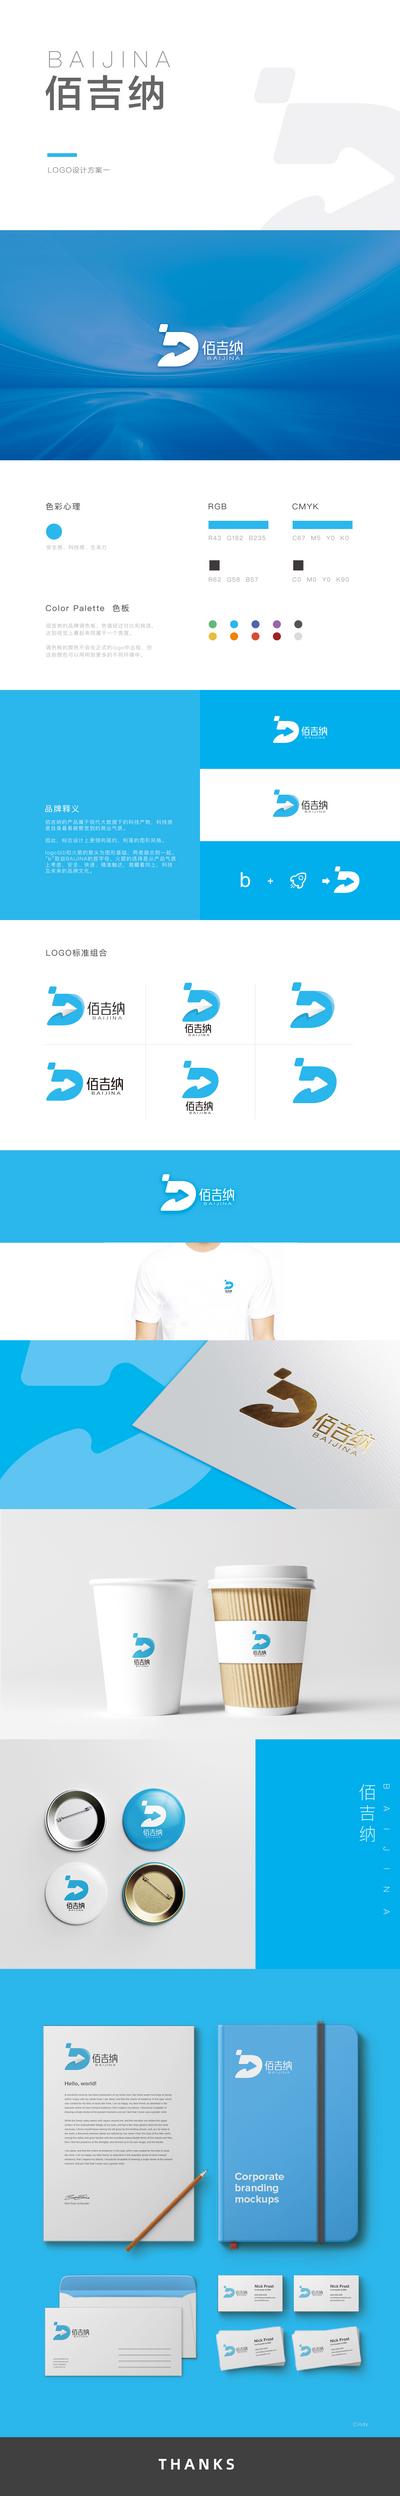 南门网 广告 海报 品牌 vi 标示 物料 logo